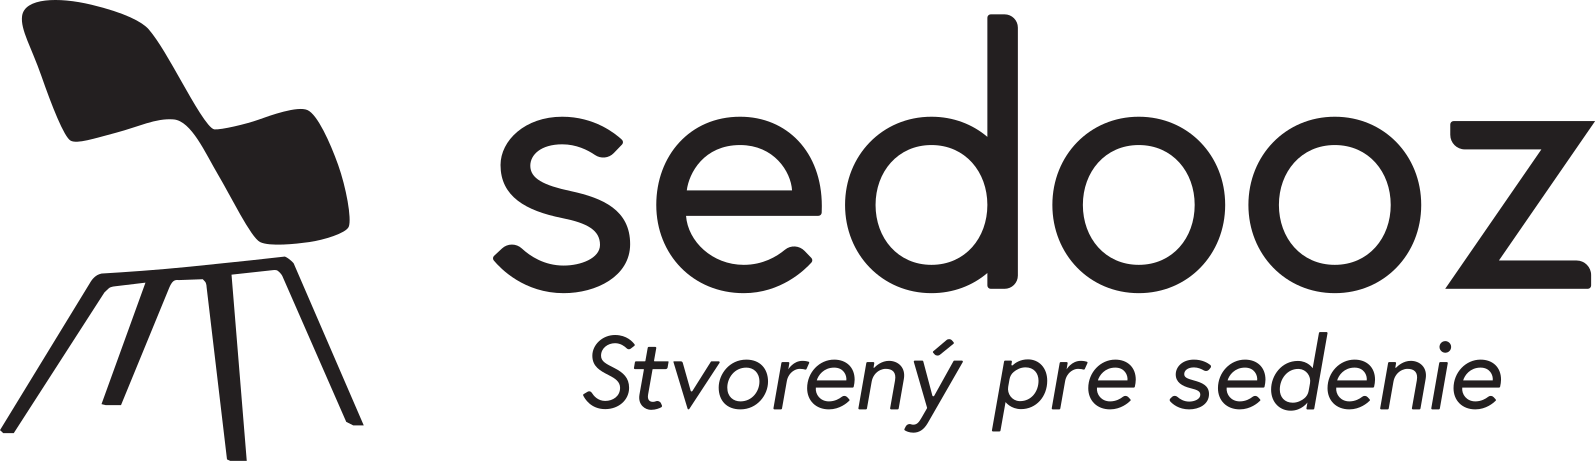 Sedooz.sk | Stvorený pre sedenie